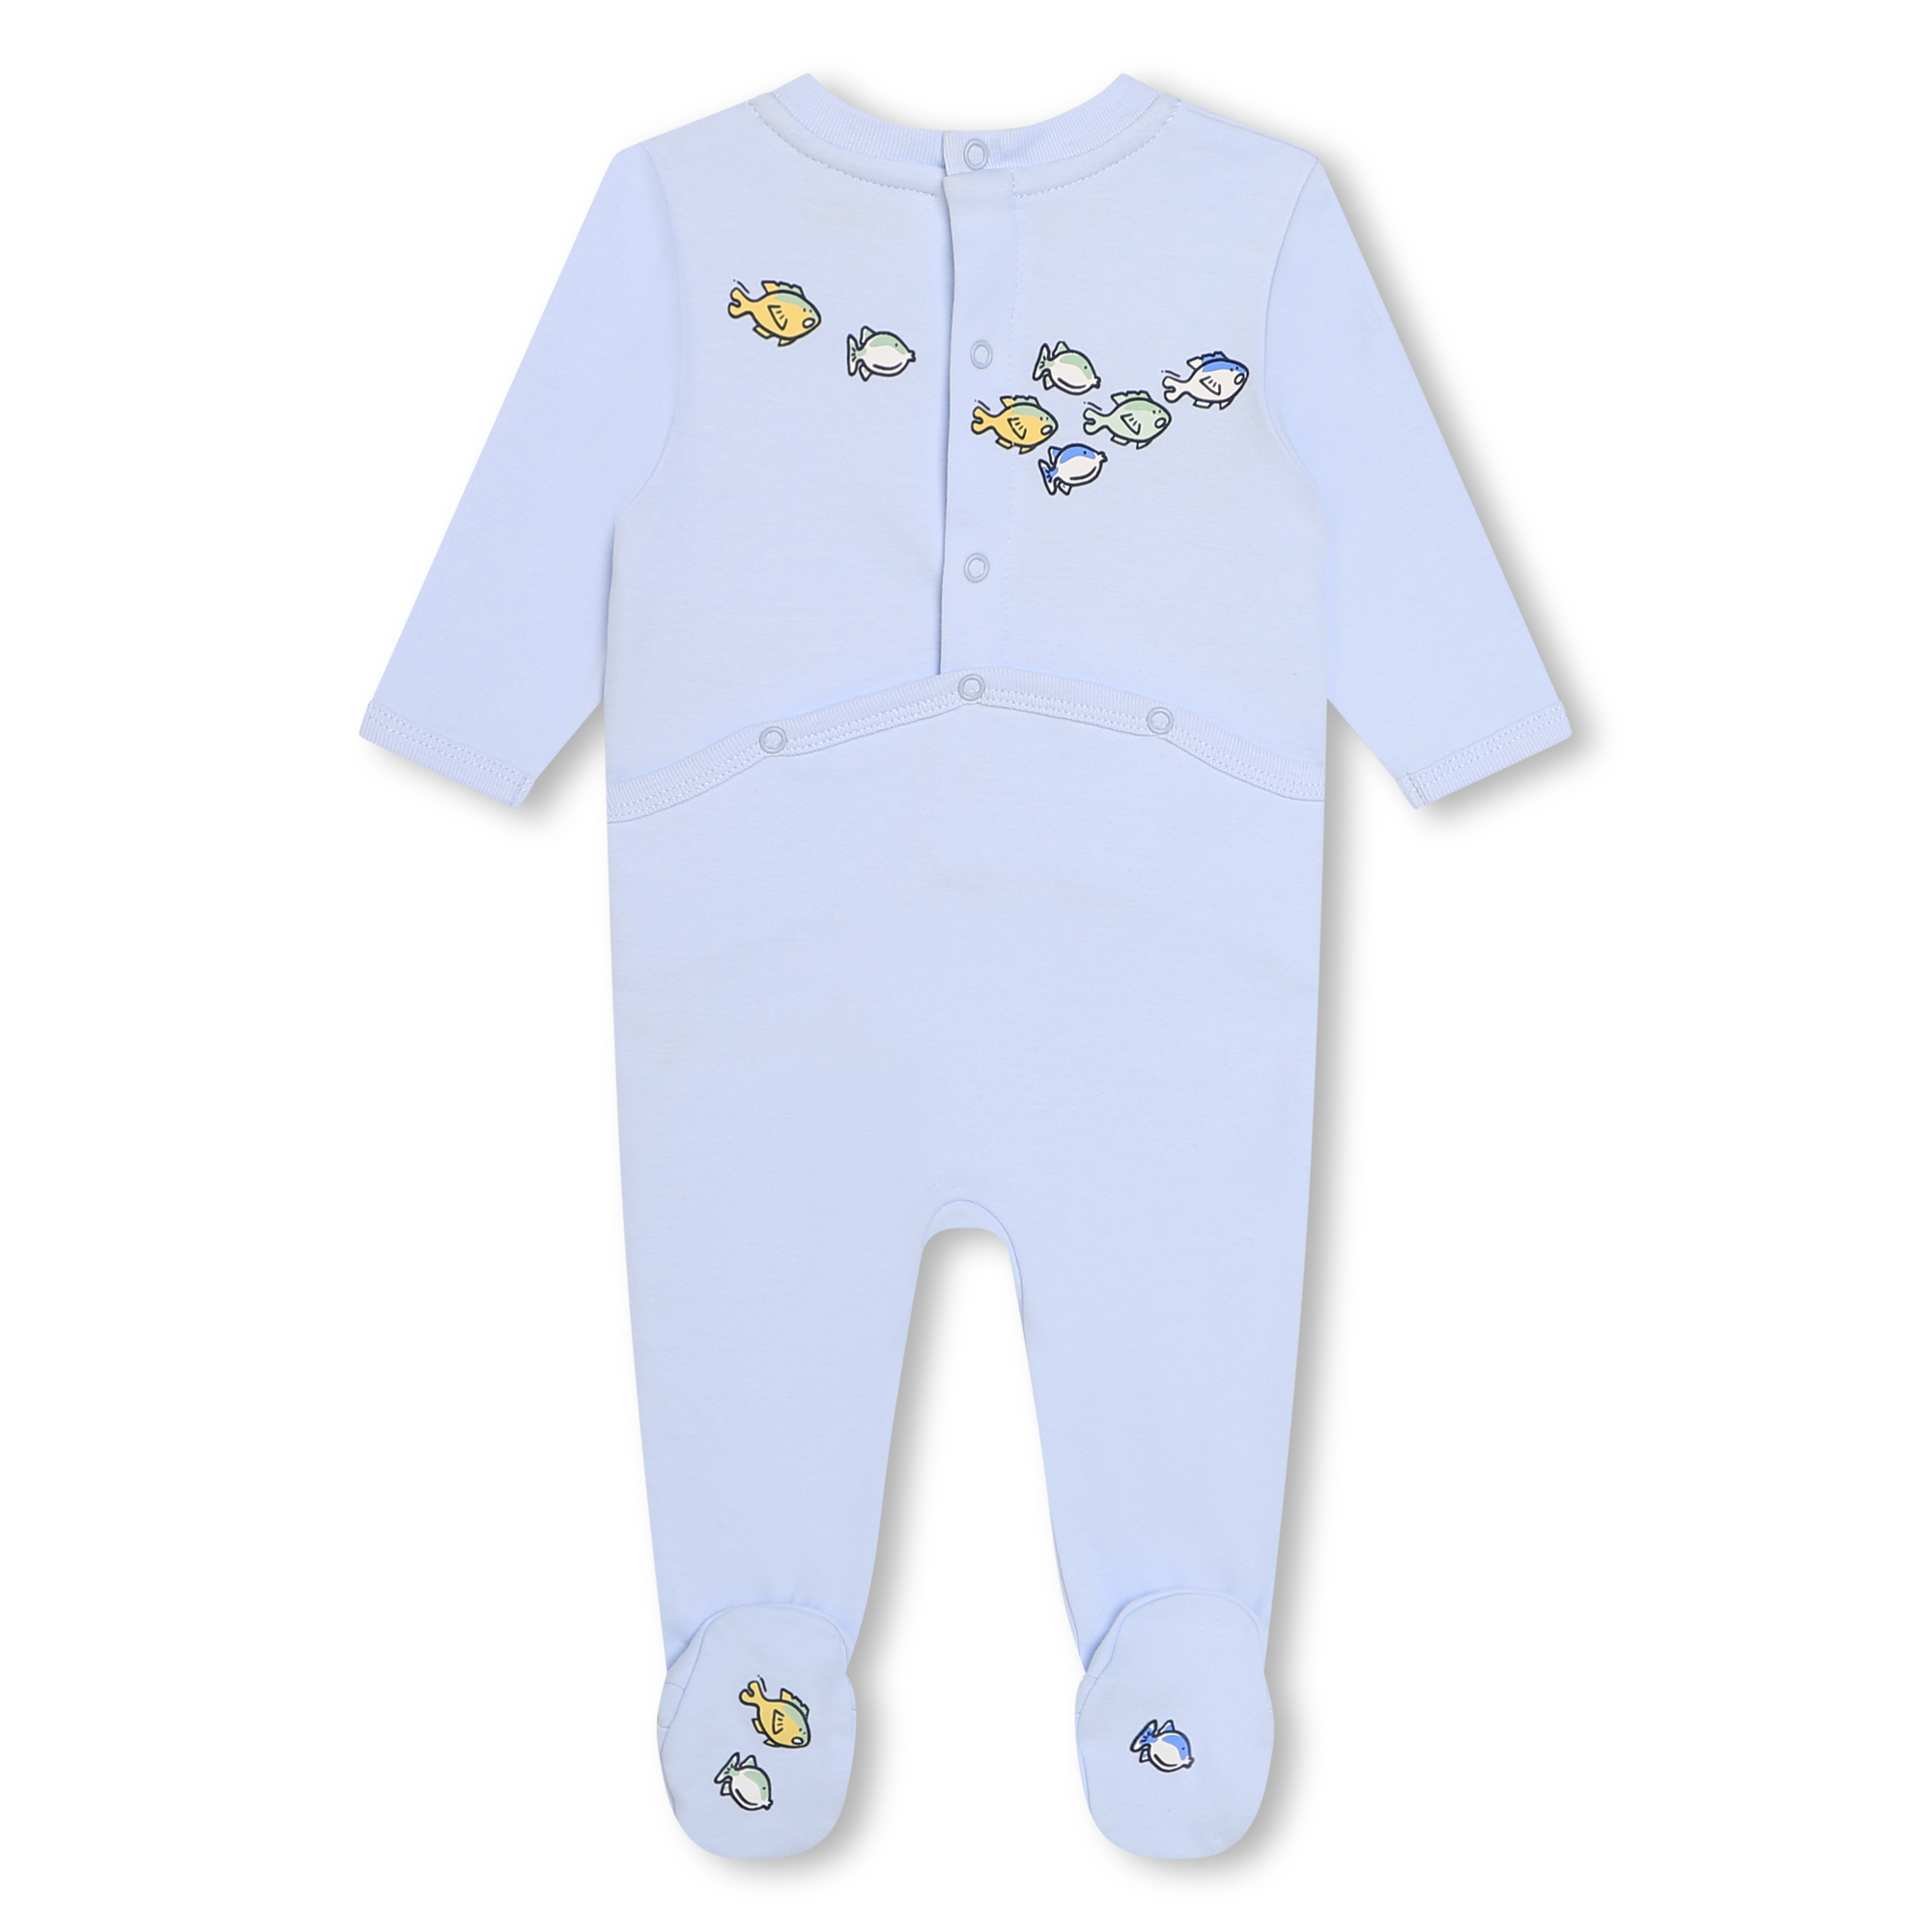 Pijama con estampados KENZO KIDS para NIÑO